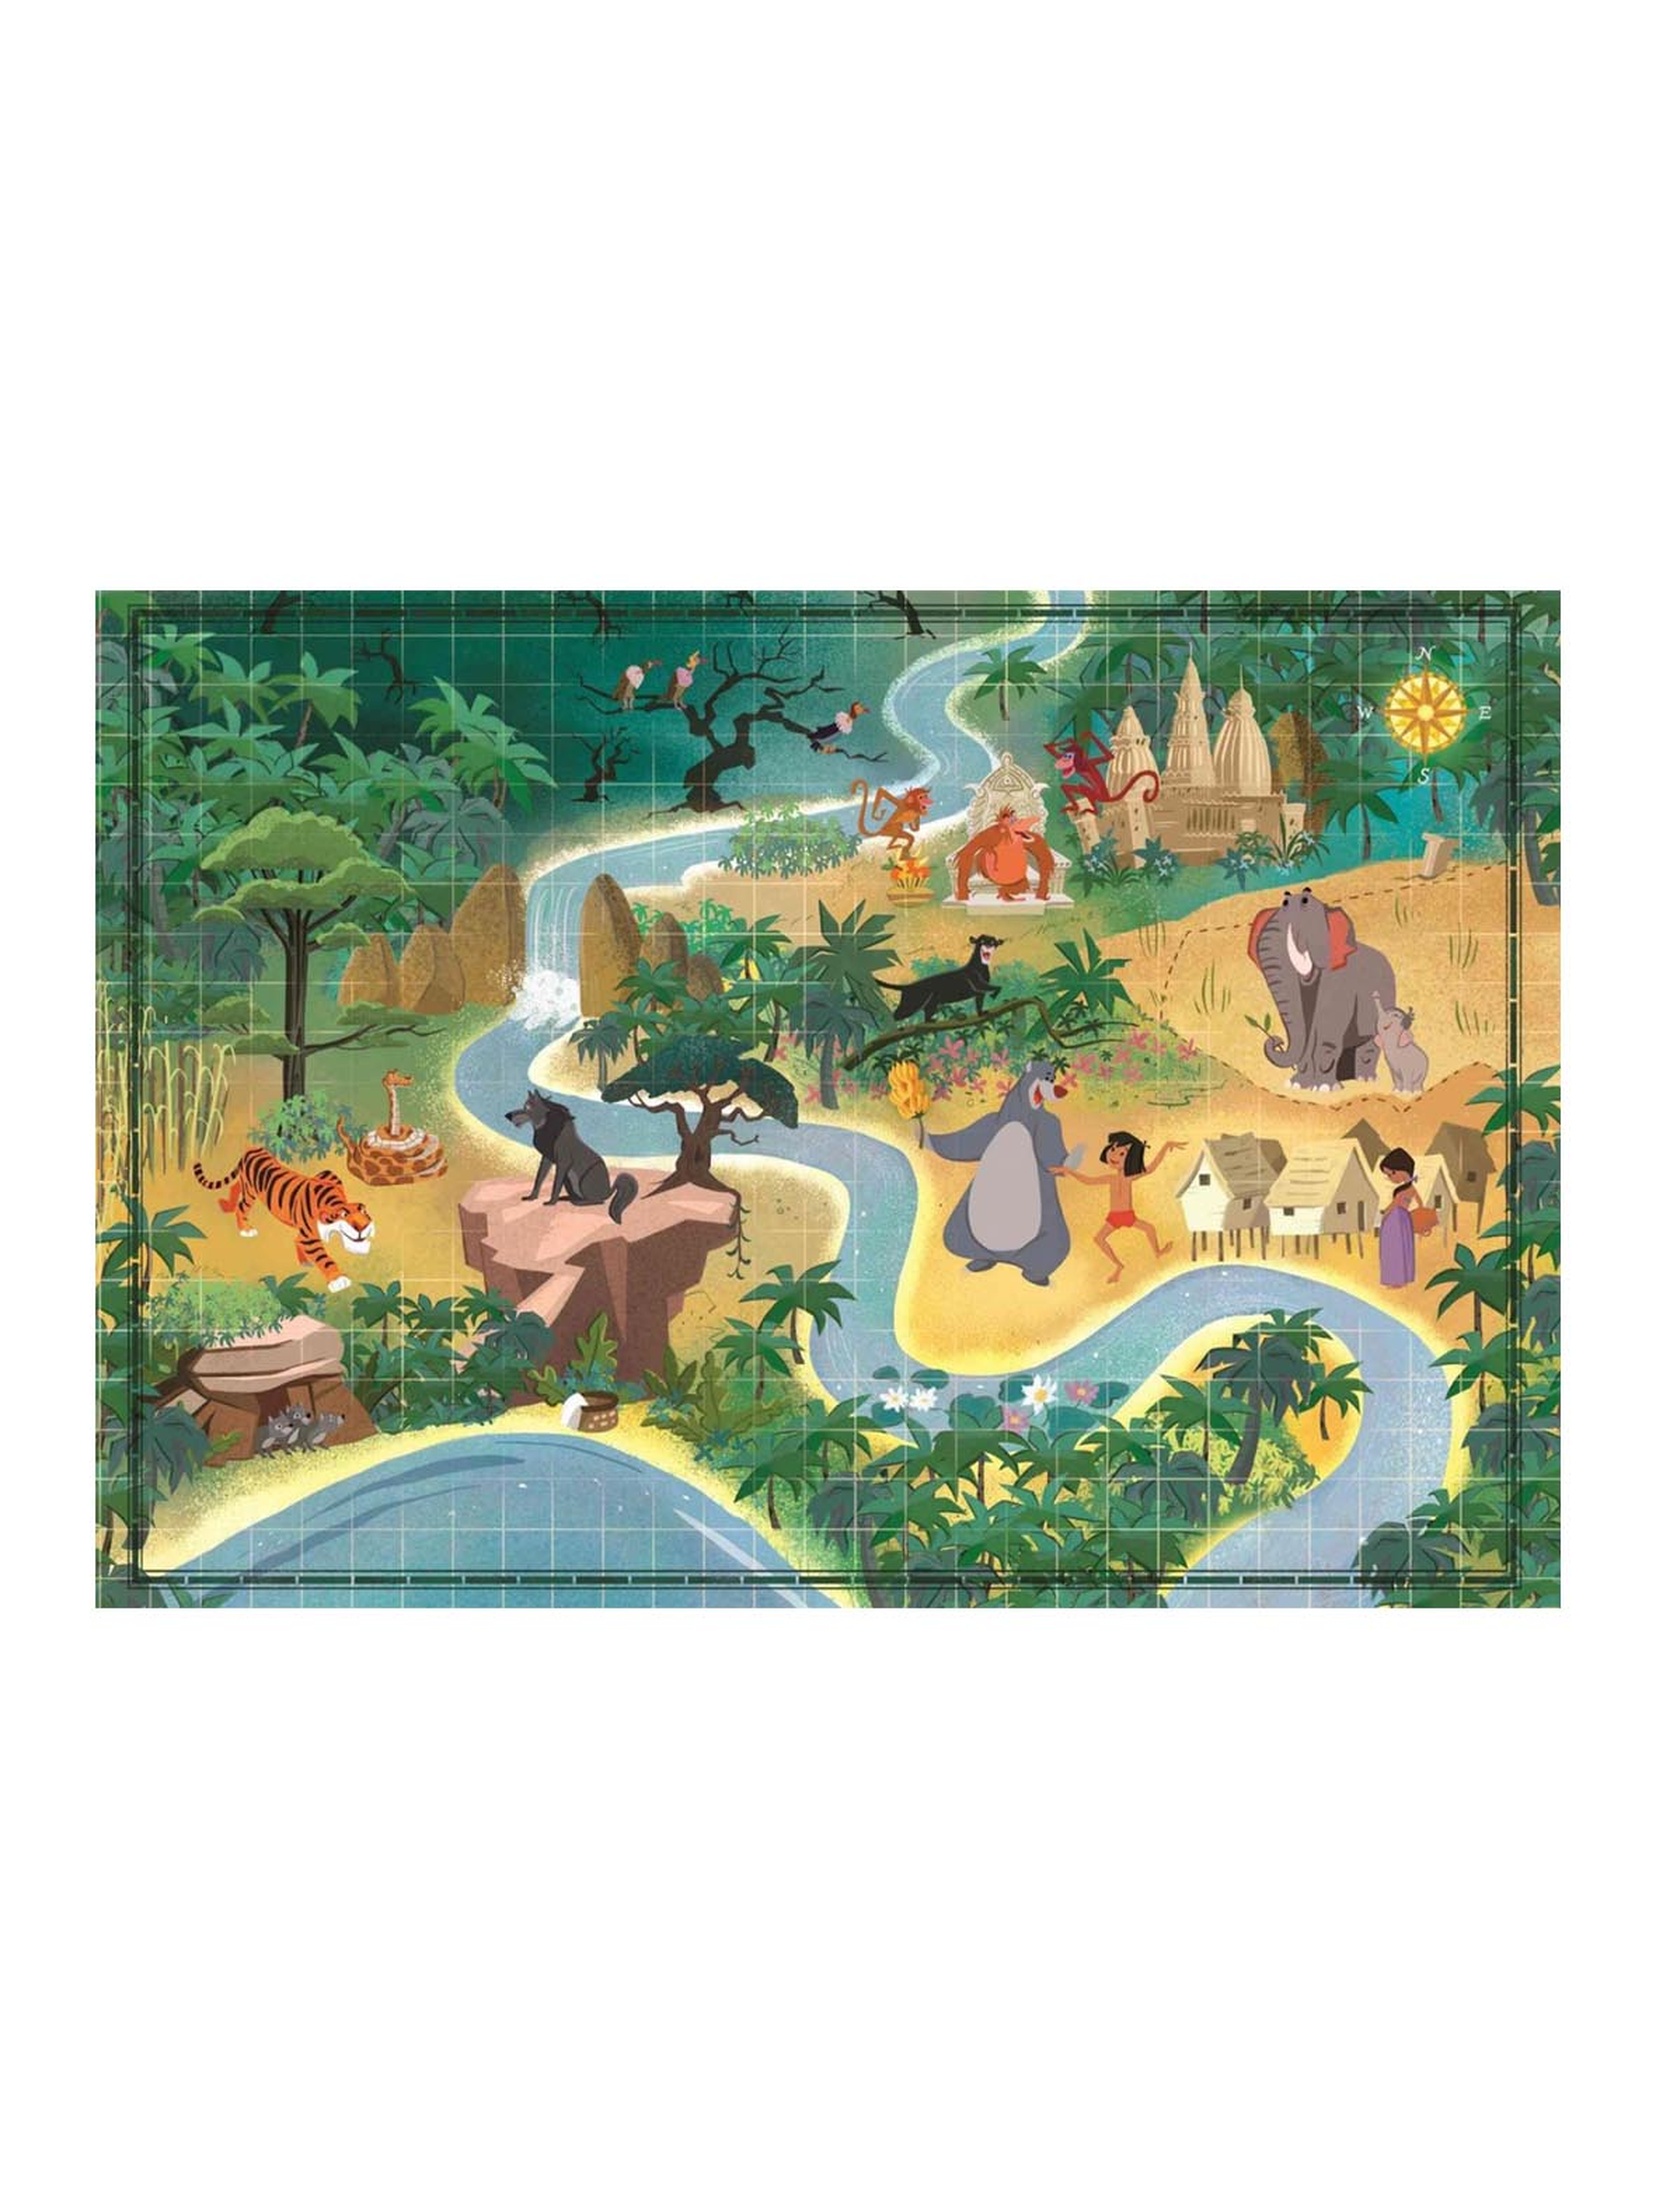 Puzzle 1000 elementów Story Maps Księga Dżungli